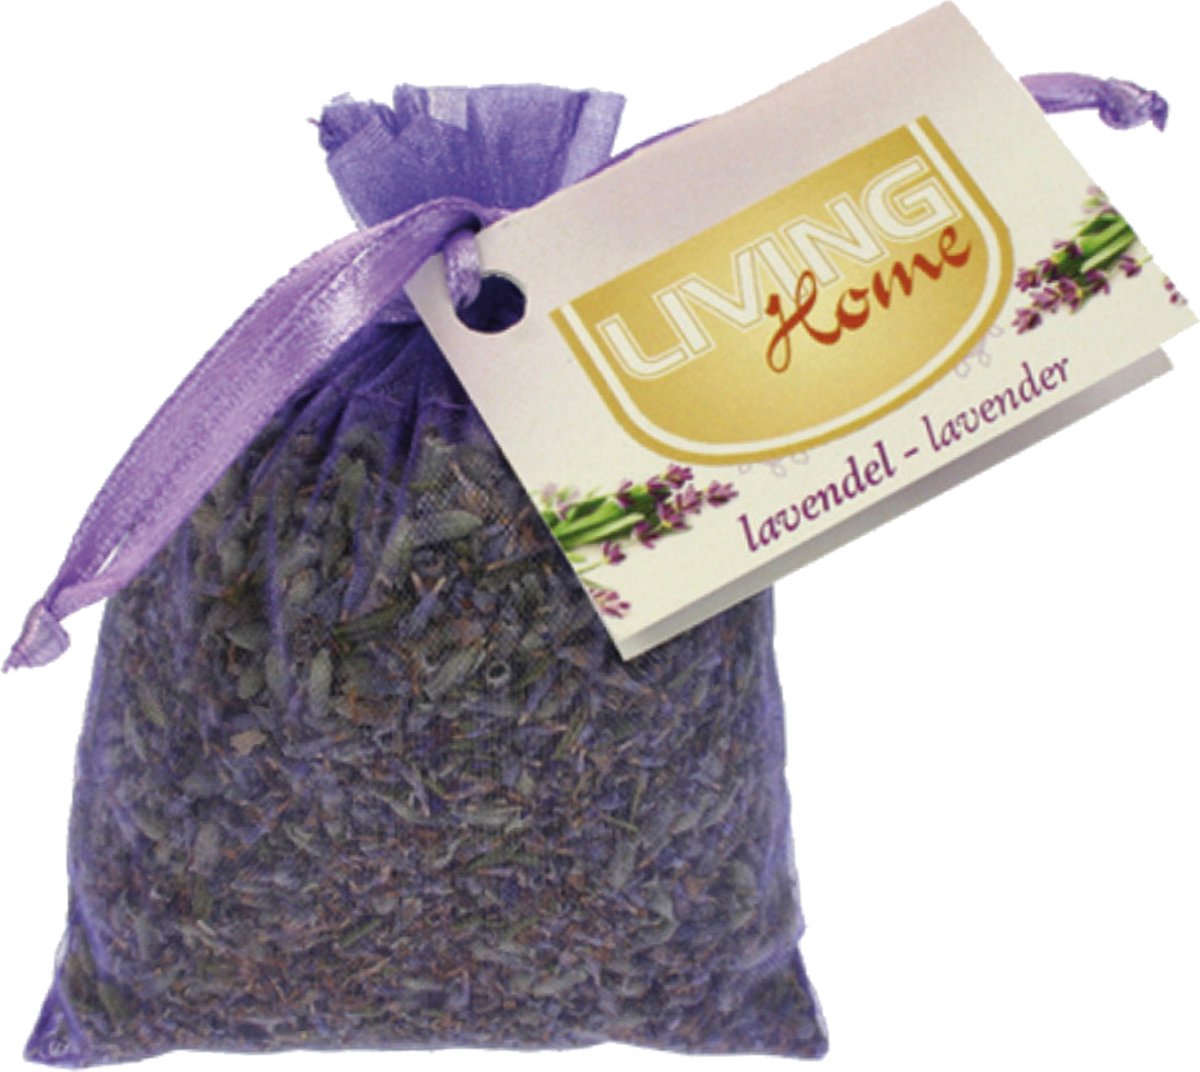 Geurzakje Lavendel in Organza zakje - 15 gram - Cadeautjes onder 10 euro - Gratis Verzonden